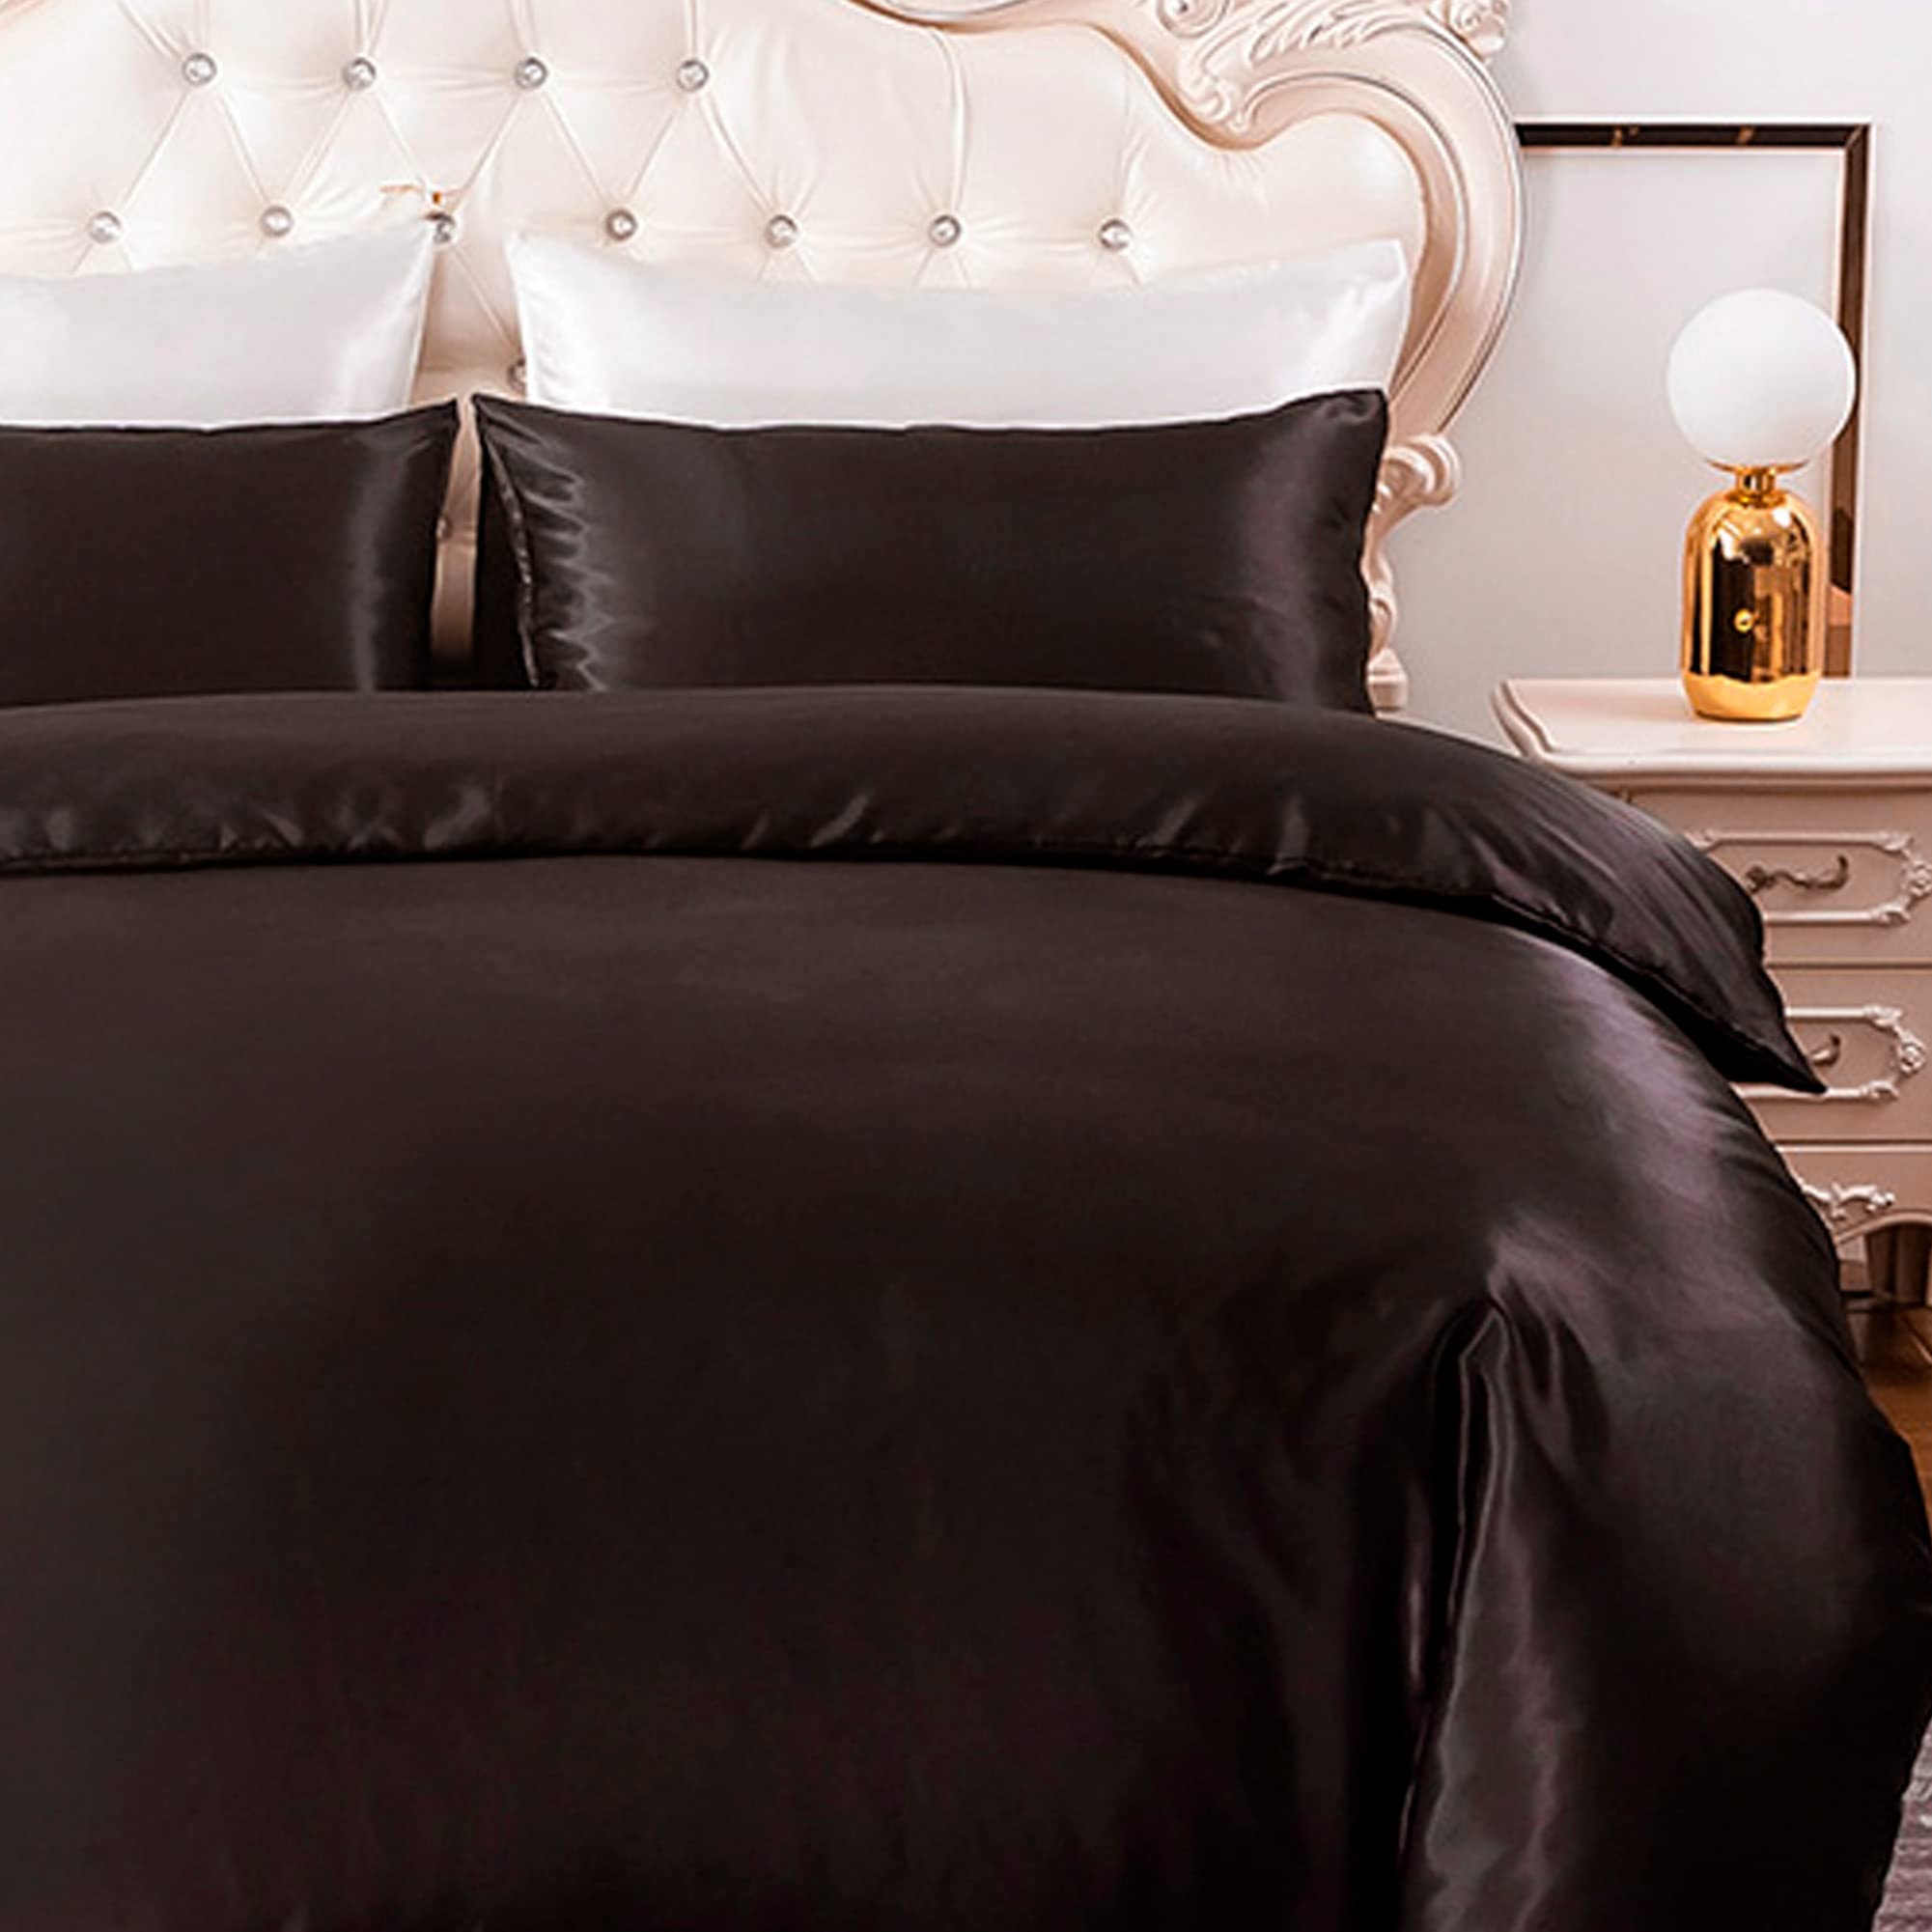 HYSENM Satin Bettwäsche 135 x 200 cm Seide Luxus Bettbezug Set Microfaser Bettbezug+ 1 Kissenhülle 50 x 70 cm einfarbig glatt bequem elegant, Schwarz